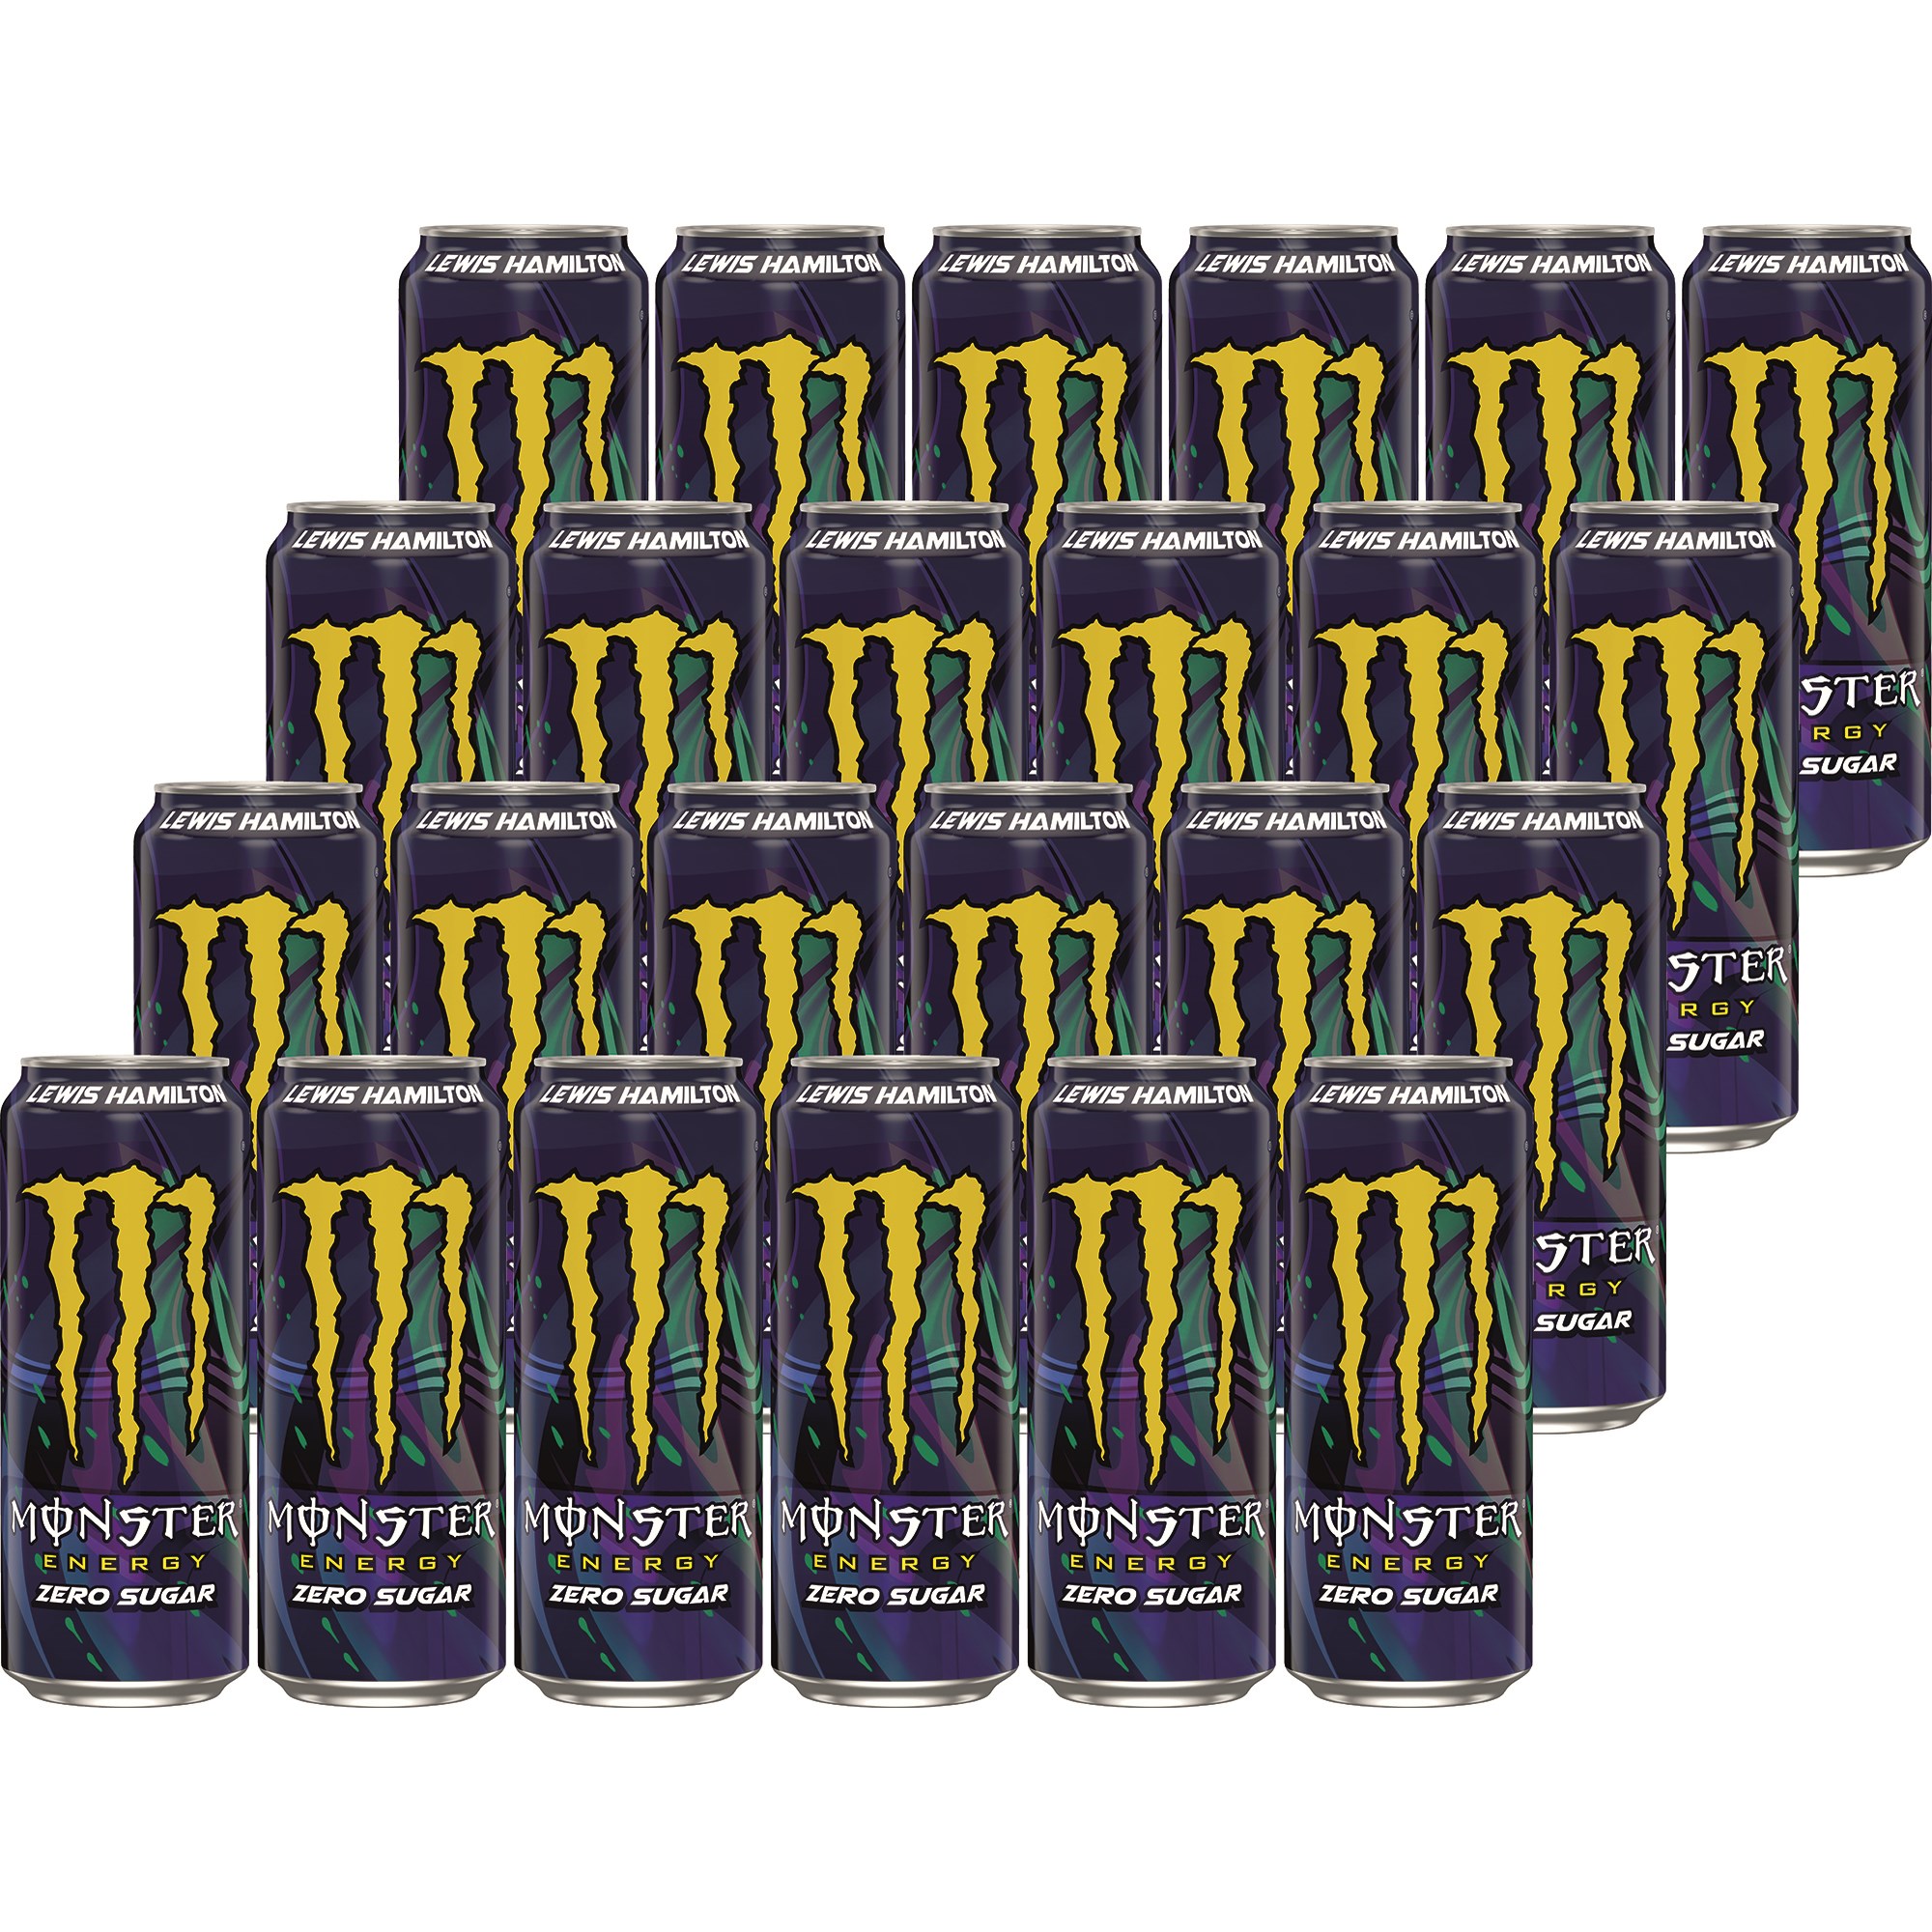 Bilde av Monster Energy Lewis Hamilton Zero Sugar 24 X 50cl